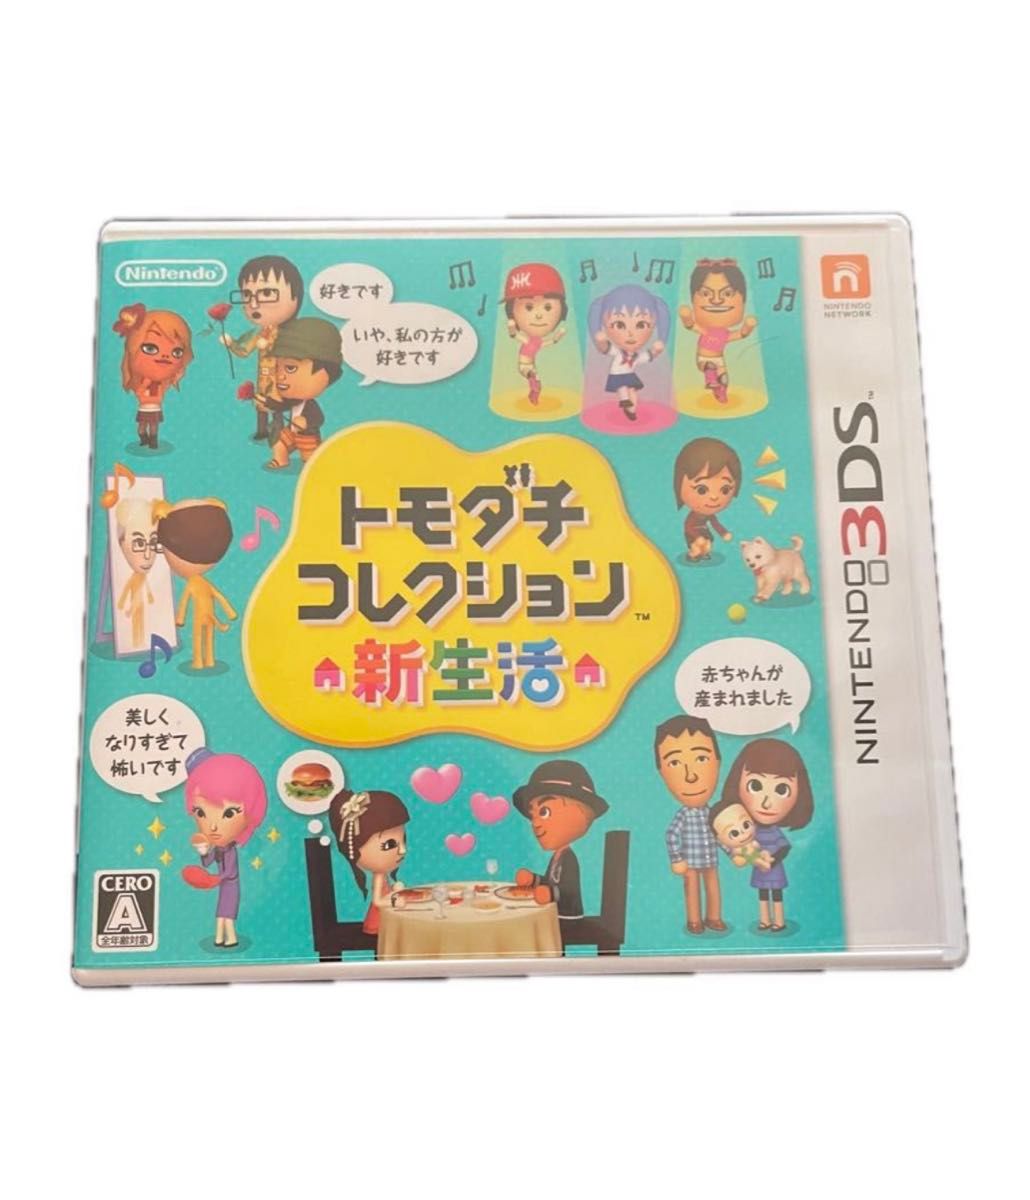 トモダチコレクション 新生活 3DS ニンテンドー3DS 任天堂 ソフト